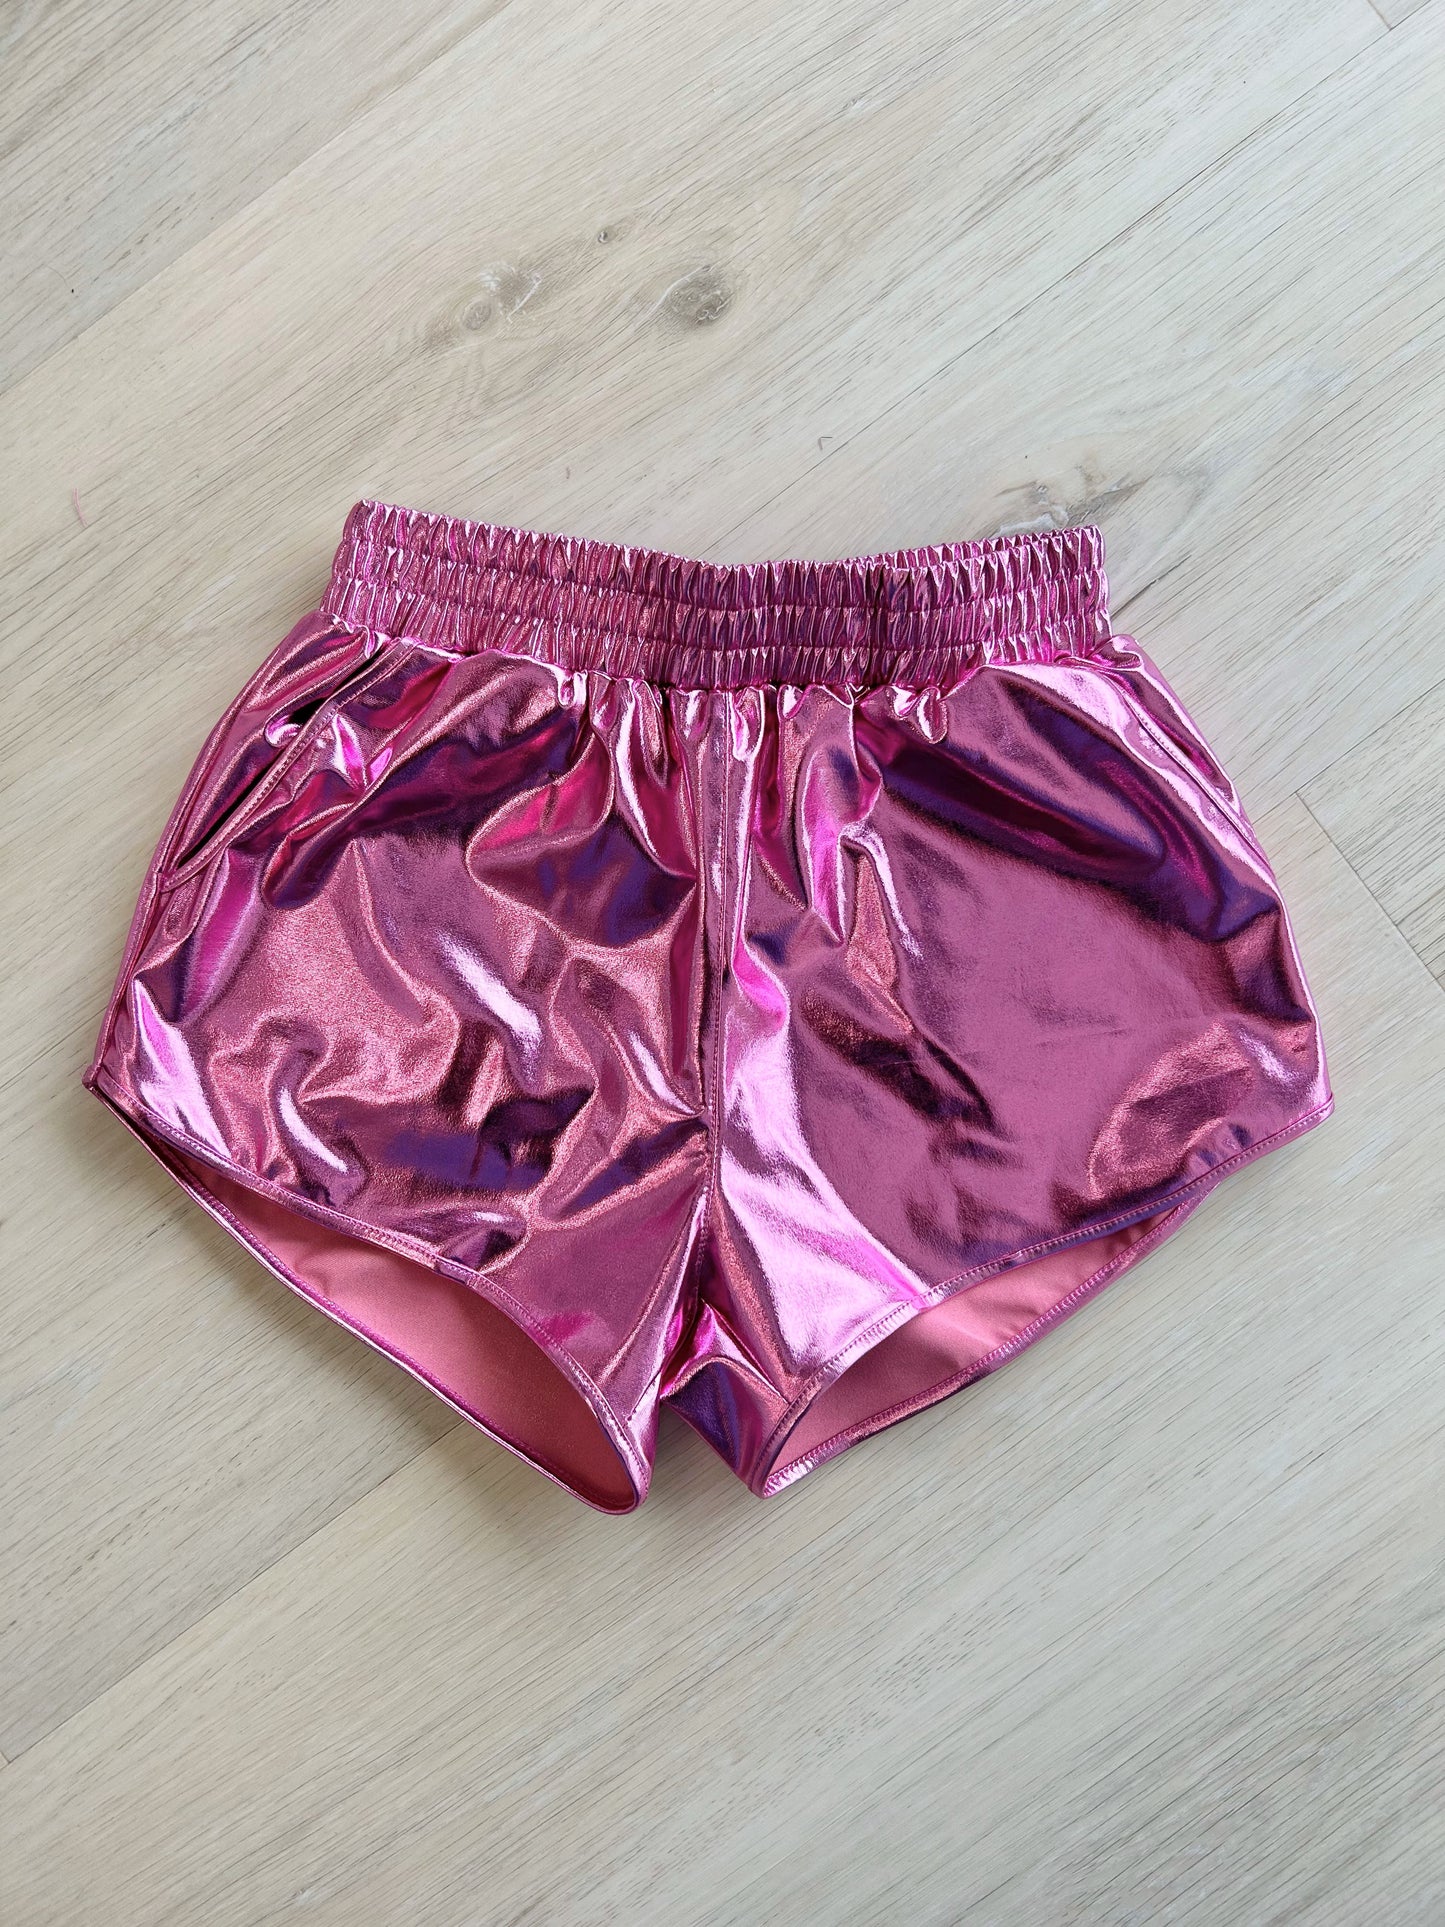 Pink Metallic Shorts